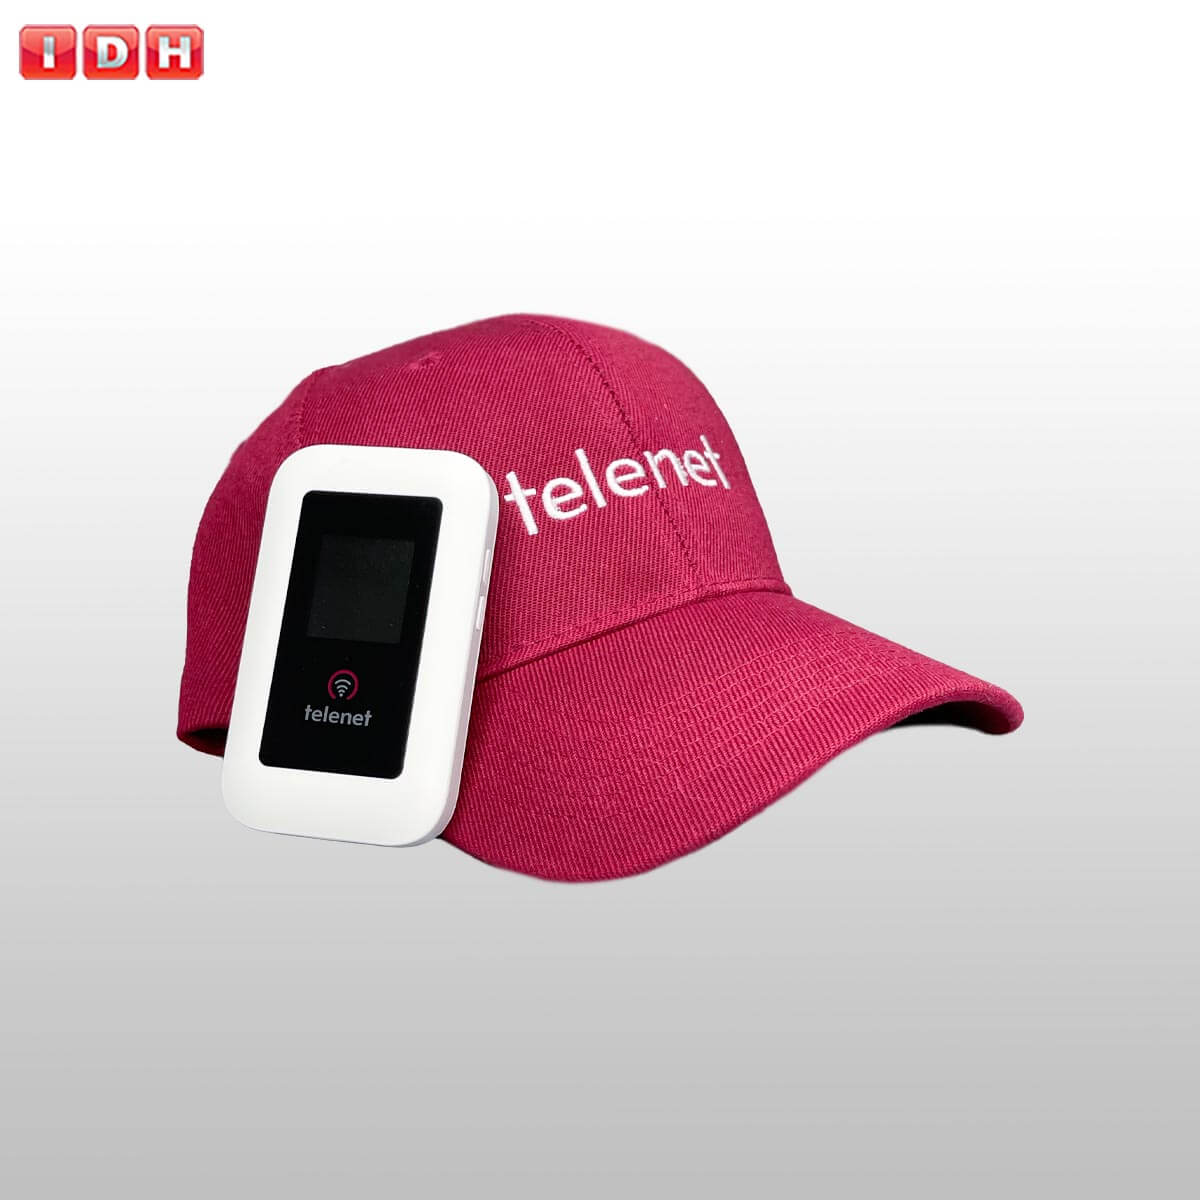 صفحه نمایشگر رنگی مودم همراه telenet IDH